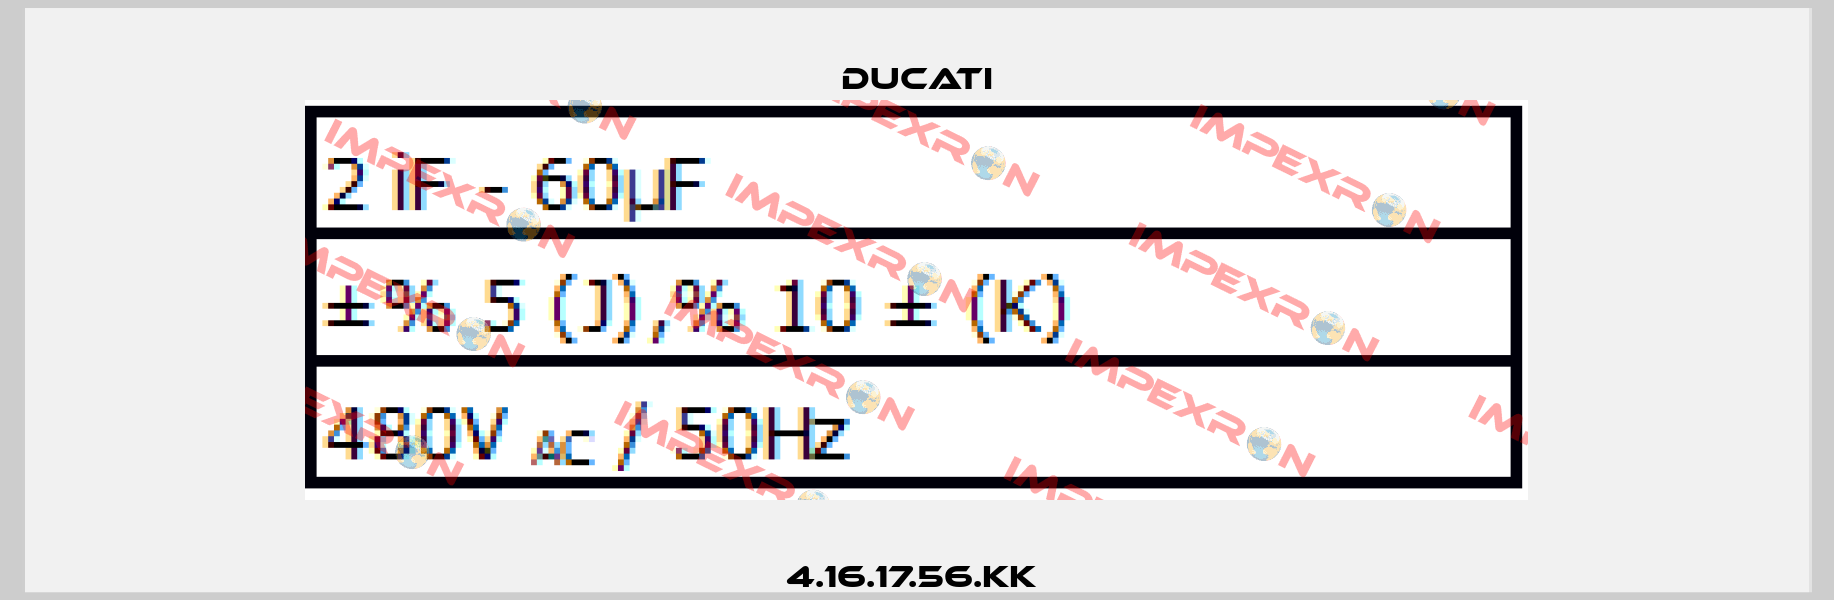 4.16.17.56.KK  Ducati